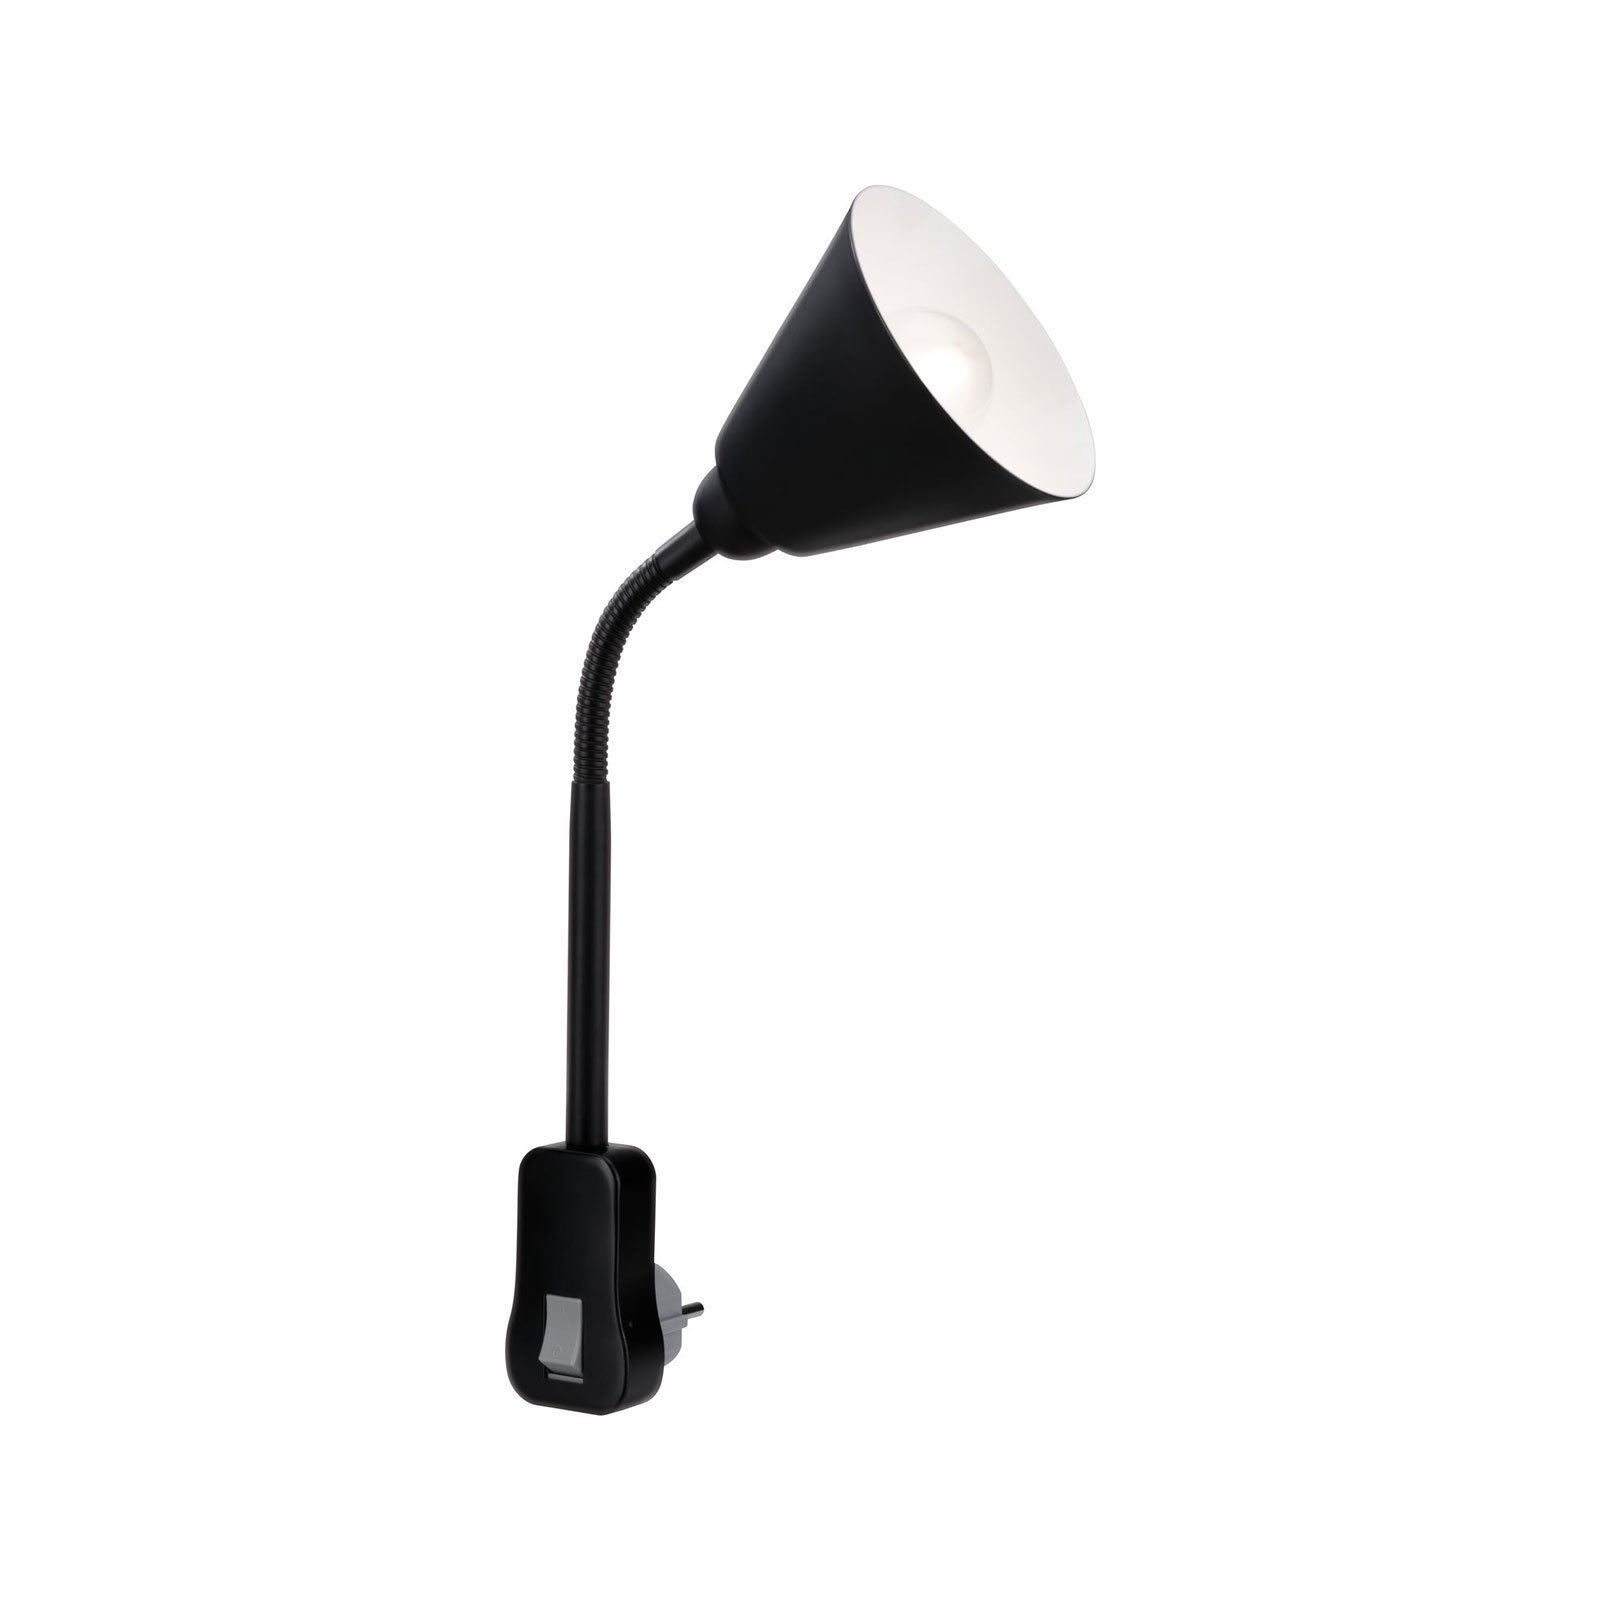 Lampa wtykowa Junus firmy Paulmann z elastycznym ramieniem, czarna